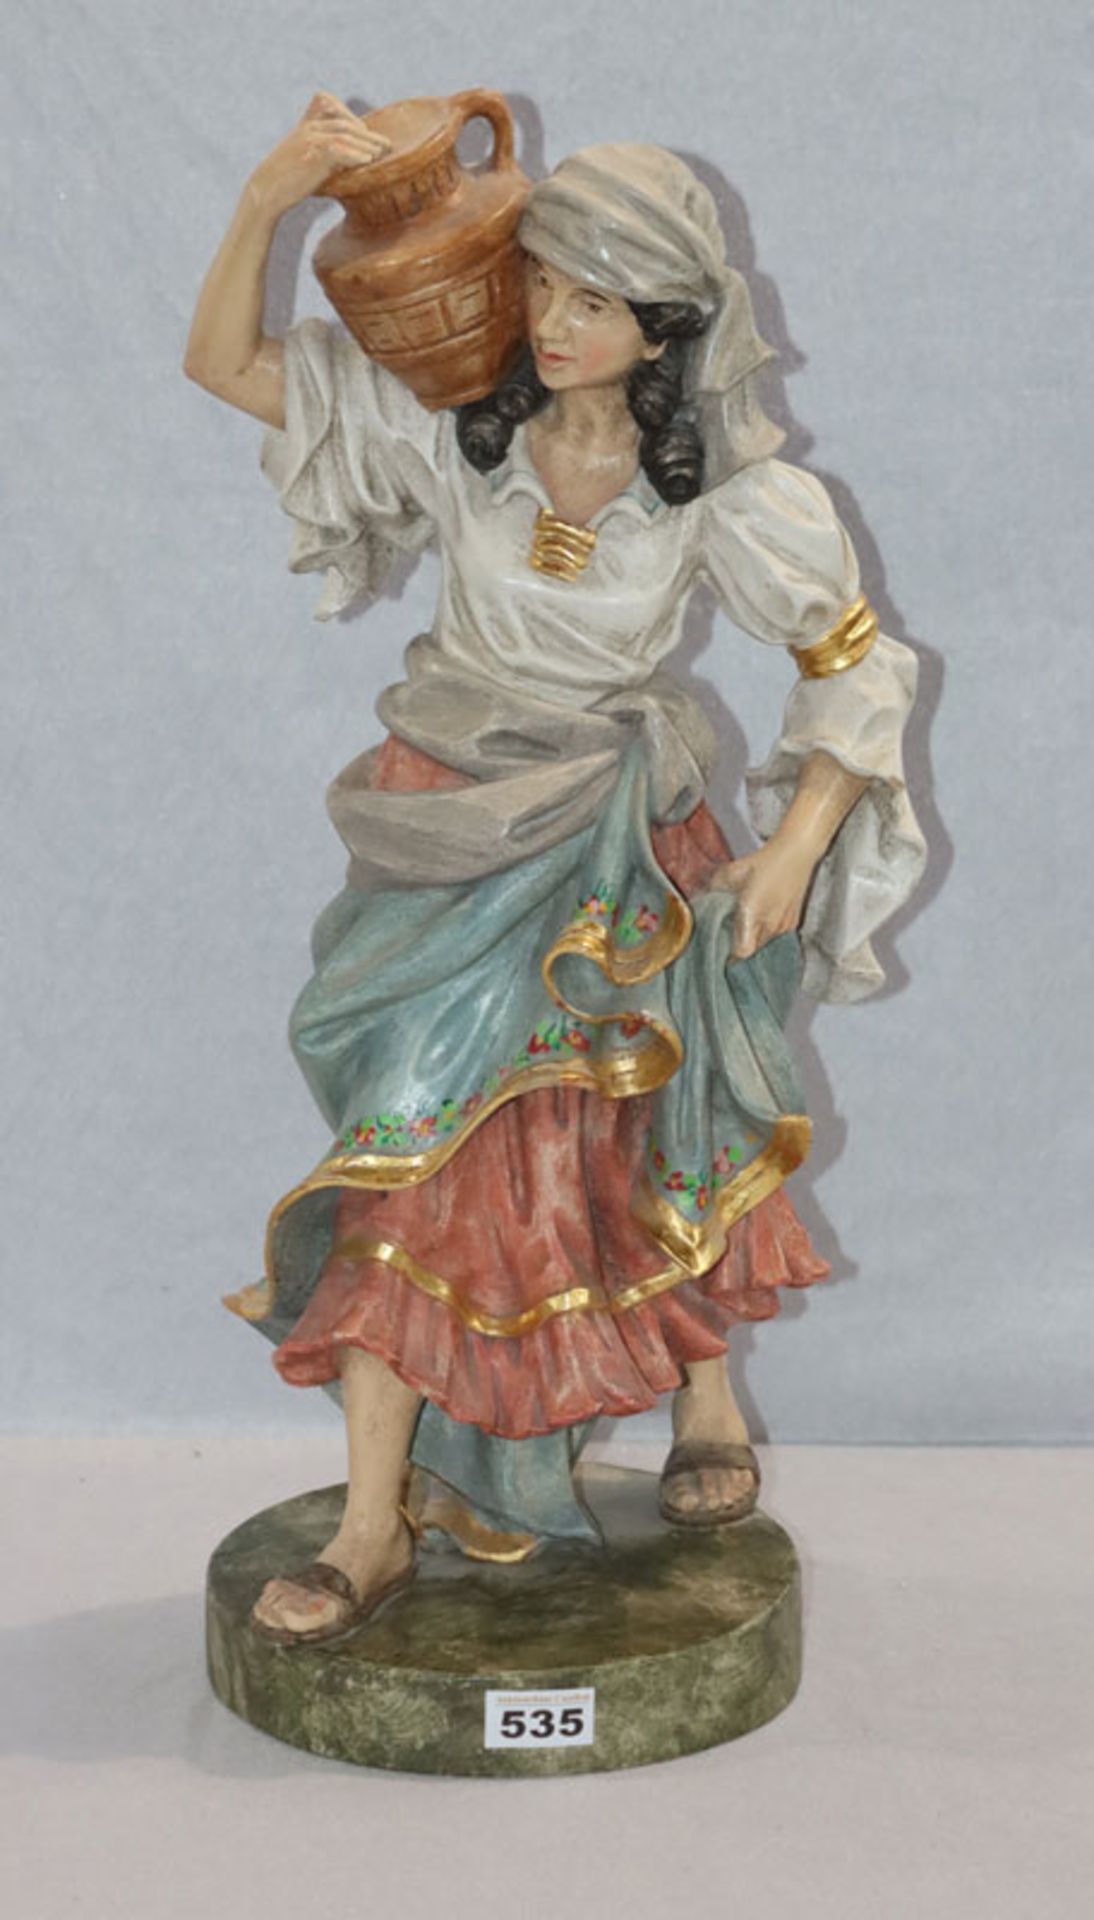 Holz Figurenskulptur 'Bäuerin mit Krug', farbig gefaßt, H 58 cm